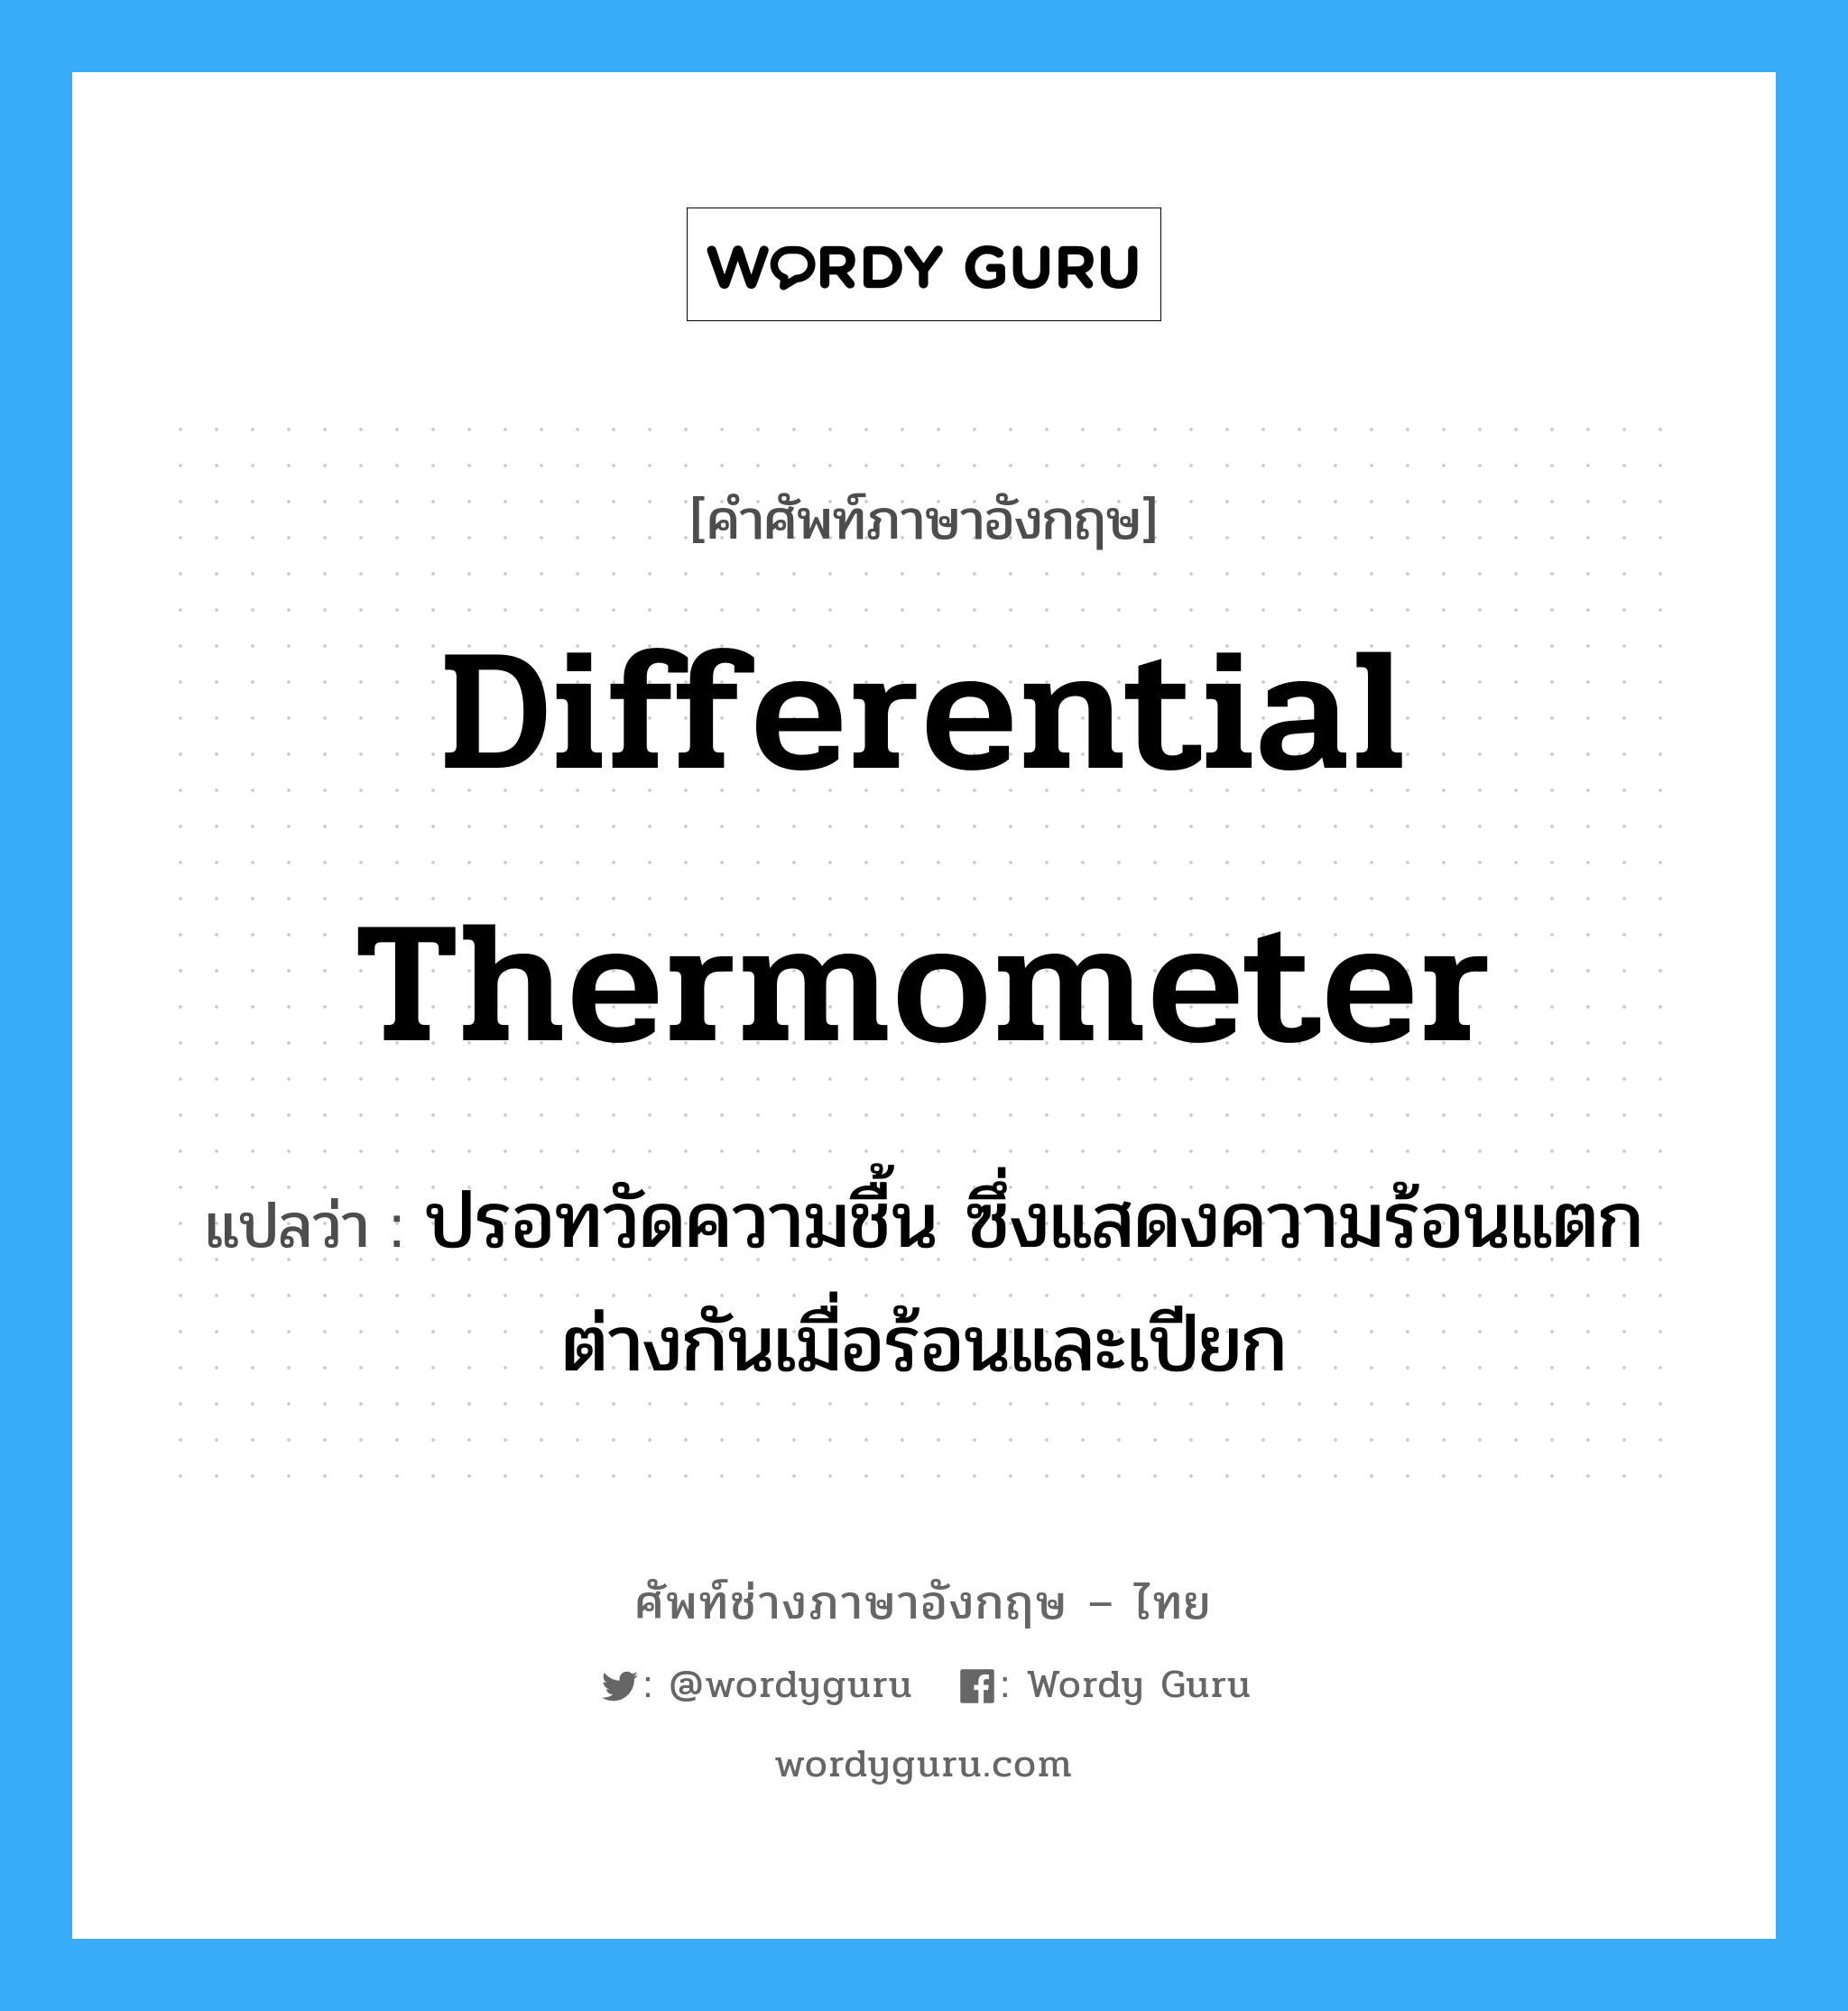 differential thermometer แปลว่า?, คำศัพท์ช่างภาษาอังกฤษ - ไทย differential thermometer คำศัพท์ภาษาอังกฤษ differential thermometer แปลว่า ปรอทวัดความชื้น ซึ่งแสดงความร้อนแตกต่างกันเมื่อร้อนและเปียก